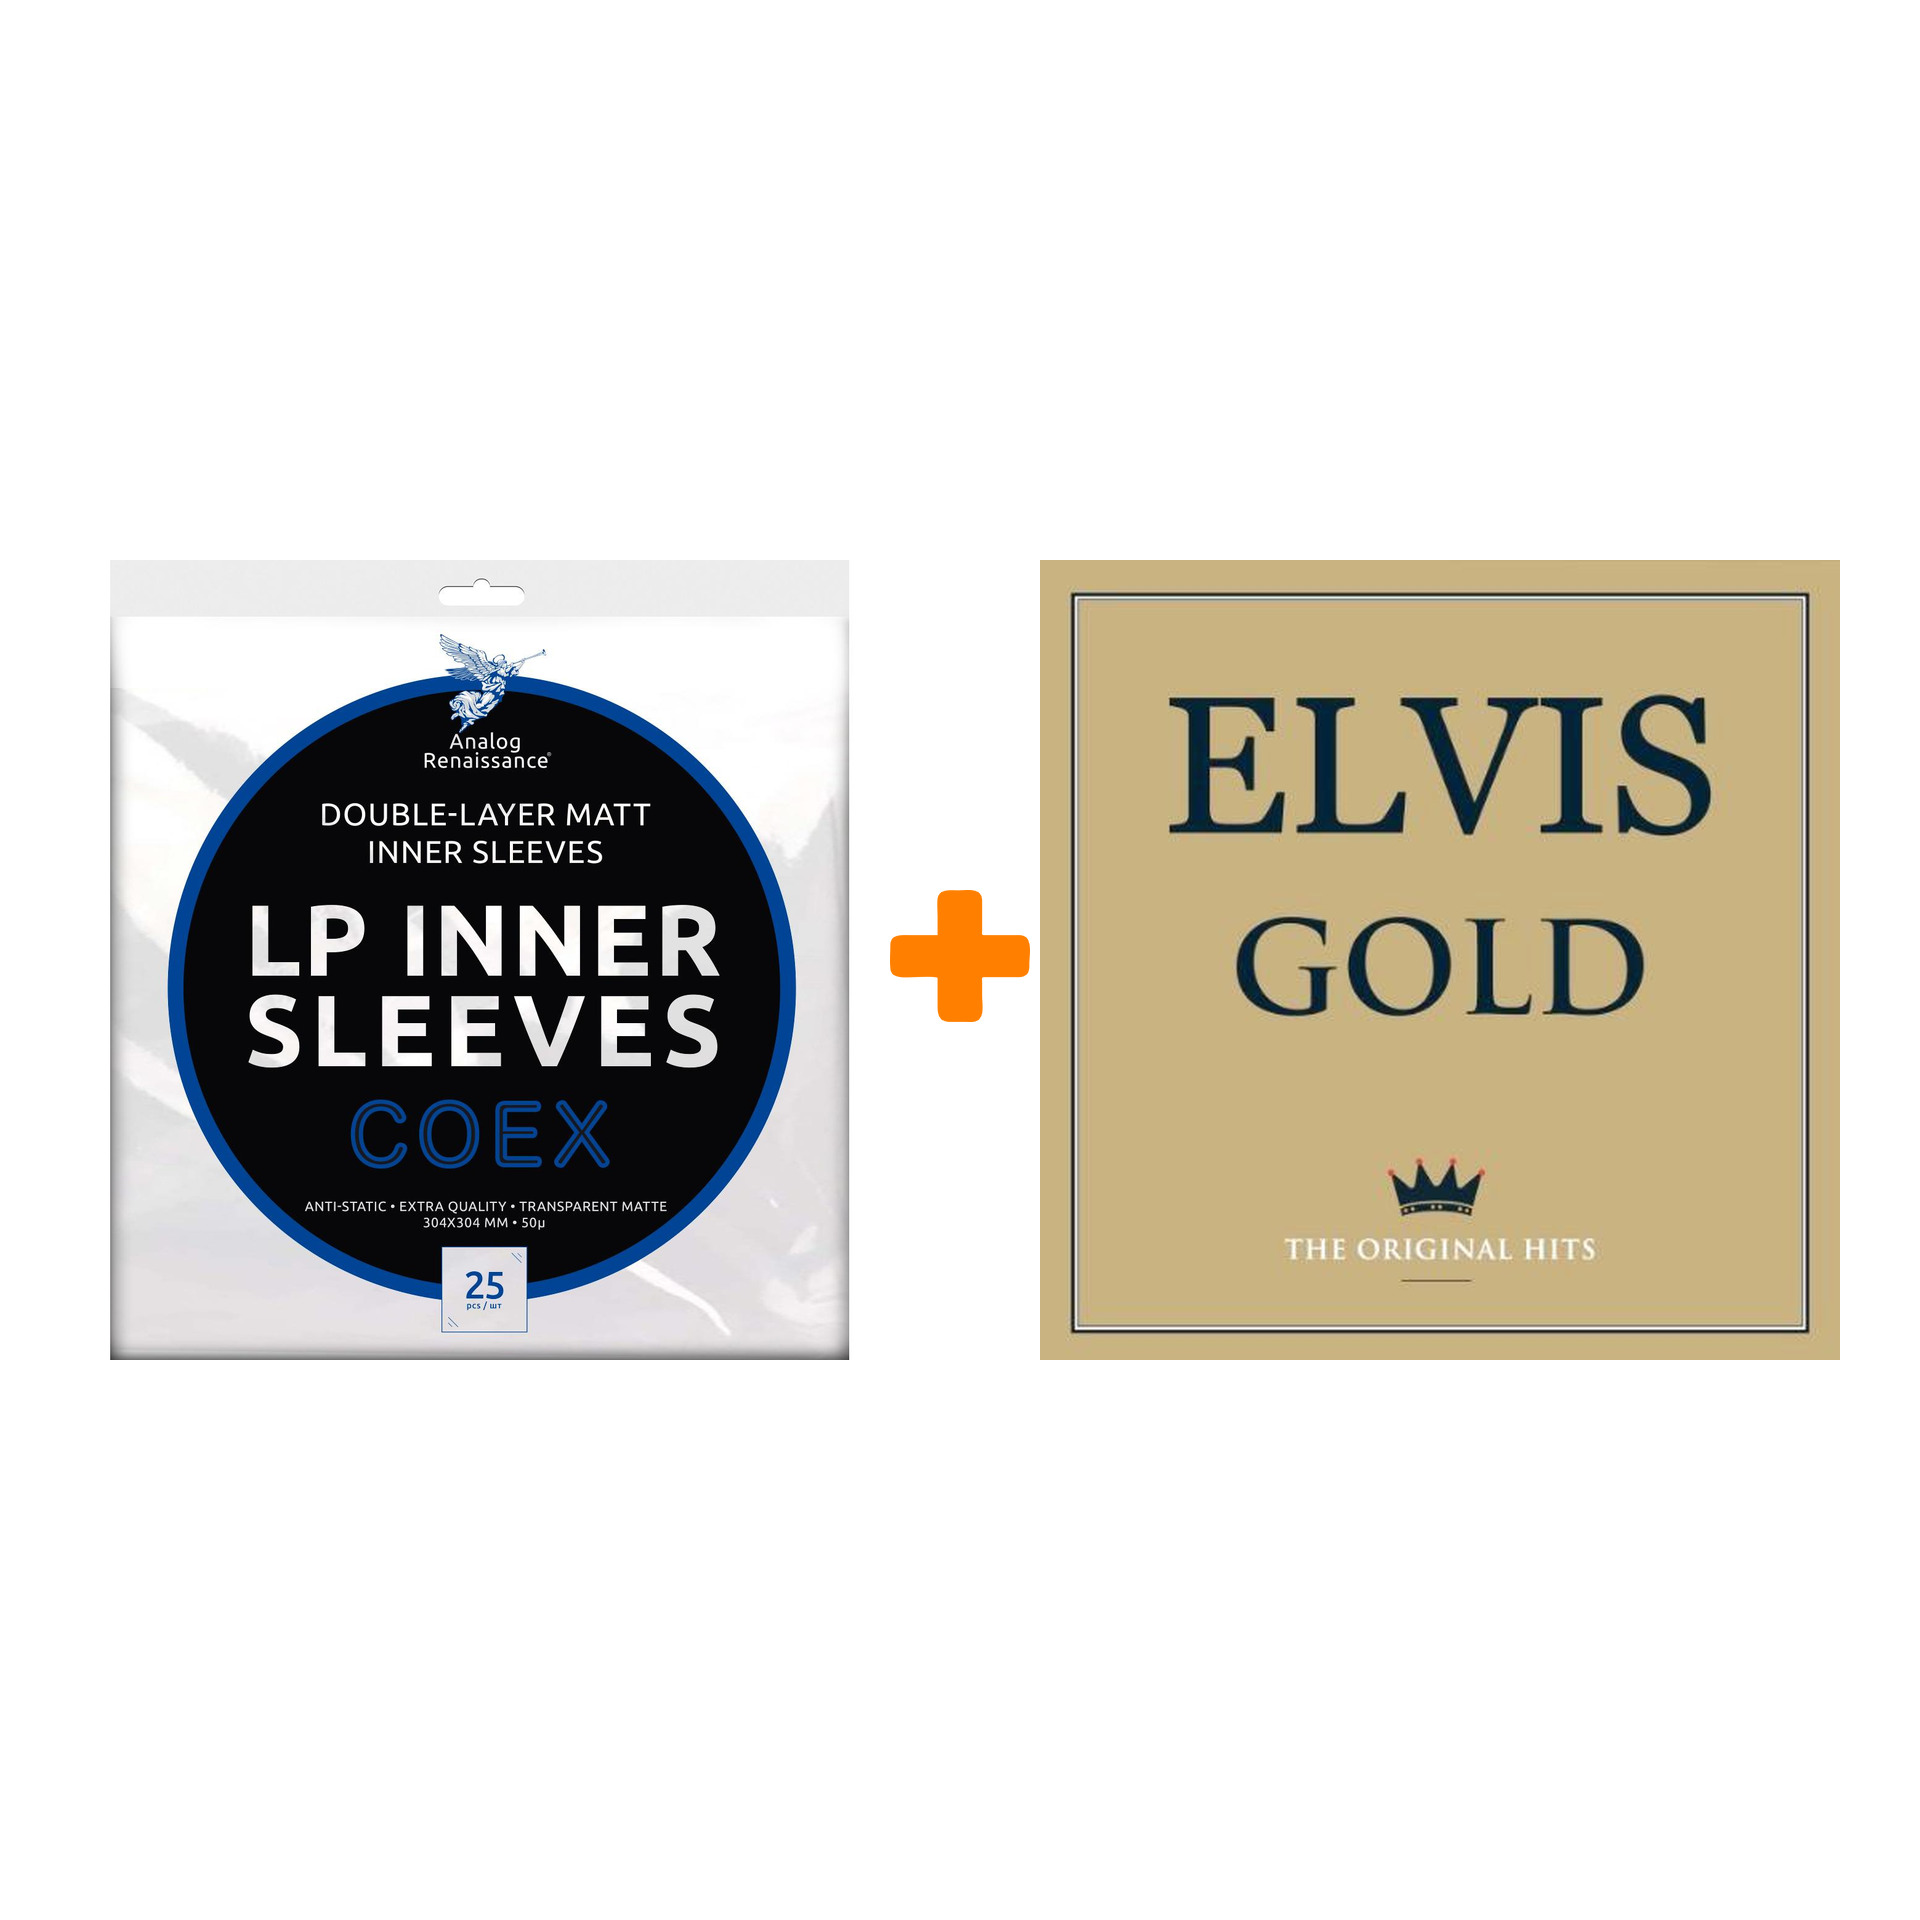 PRESLEY ELVIS Gold 2LP + Конверты внутренние COEX для грампластинок 12 25шт Набор цена и фото